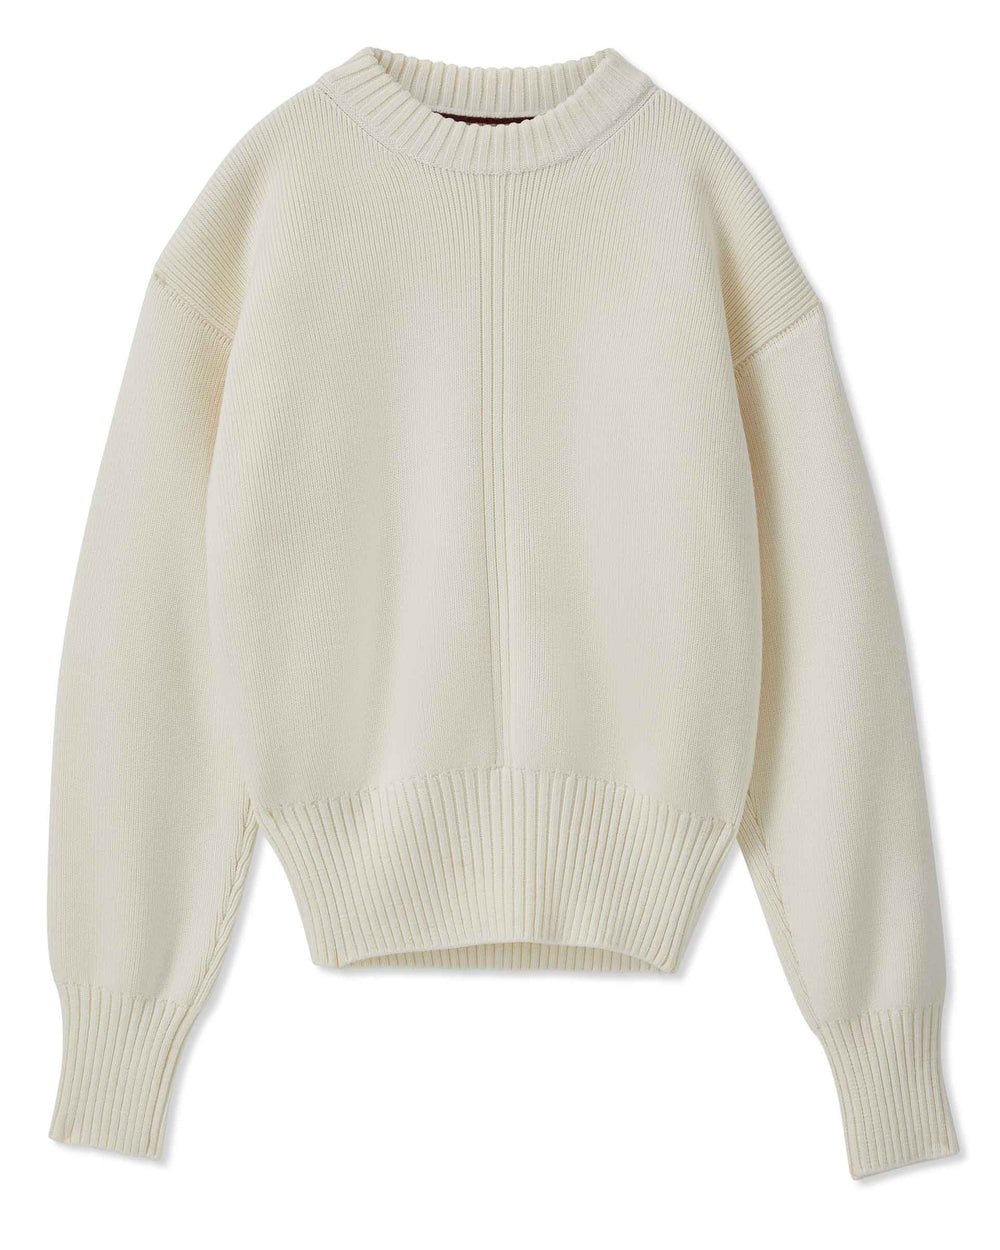 Valentina Sweater in Merino Wool, Cream